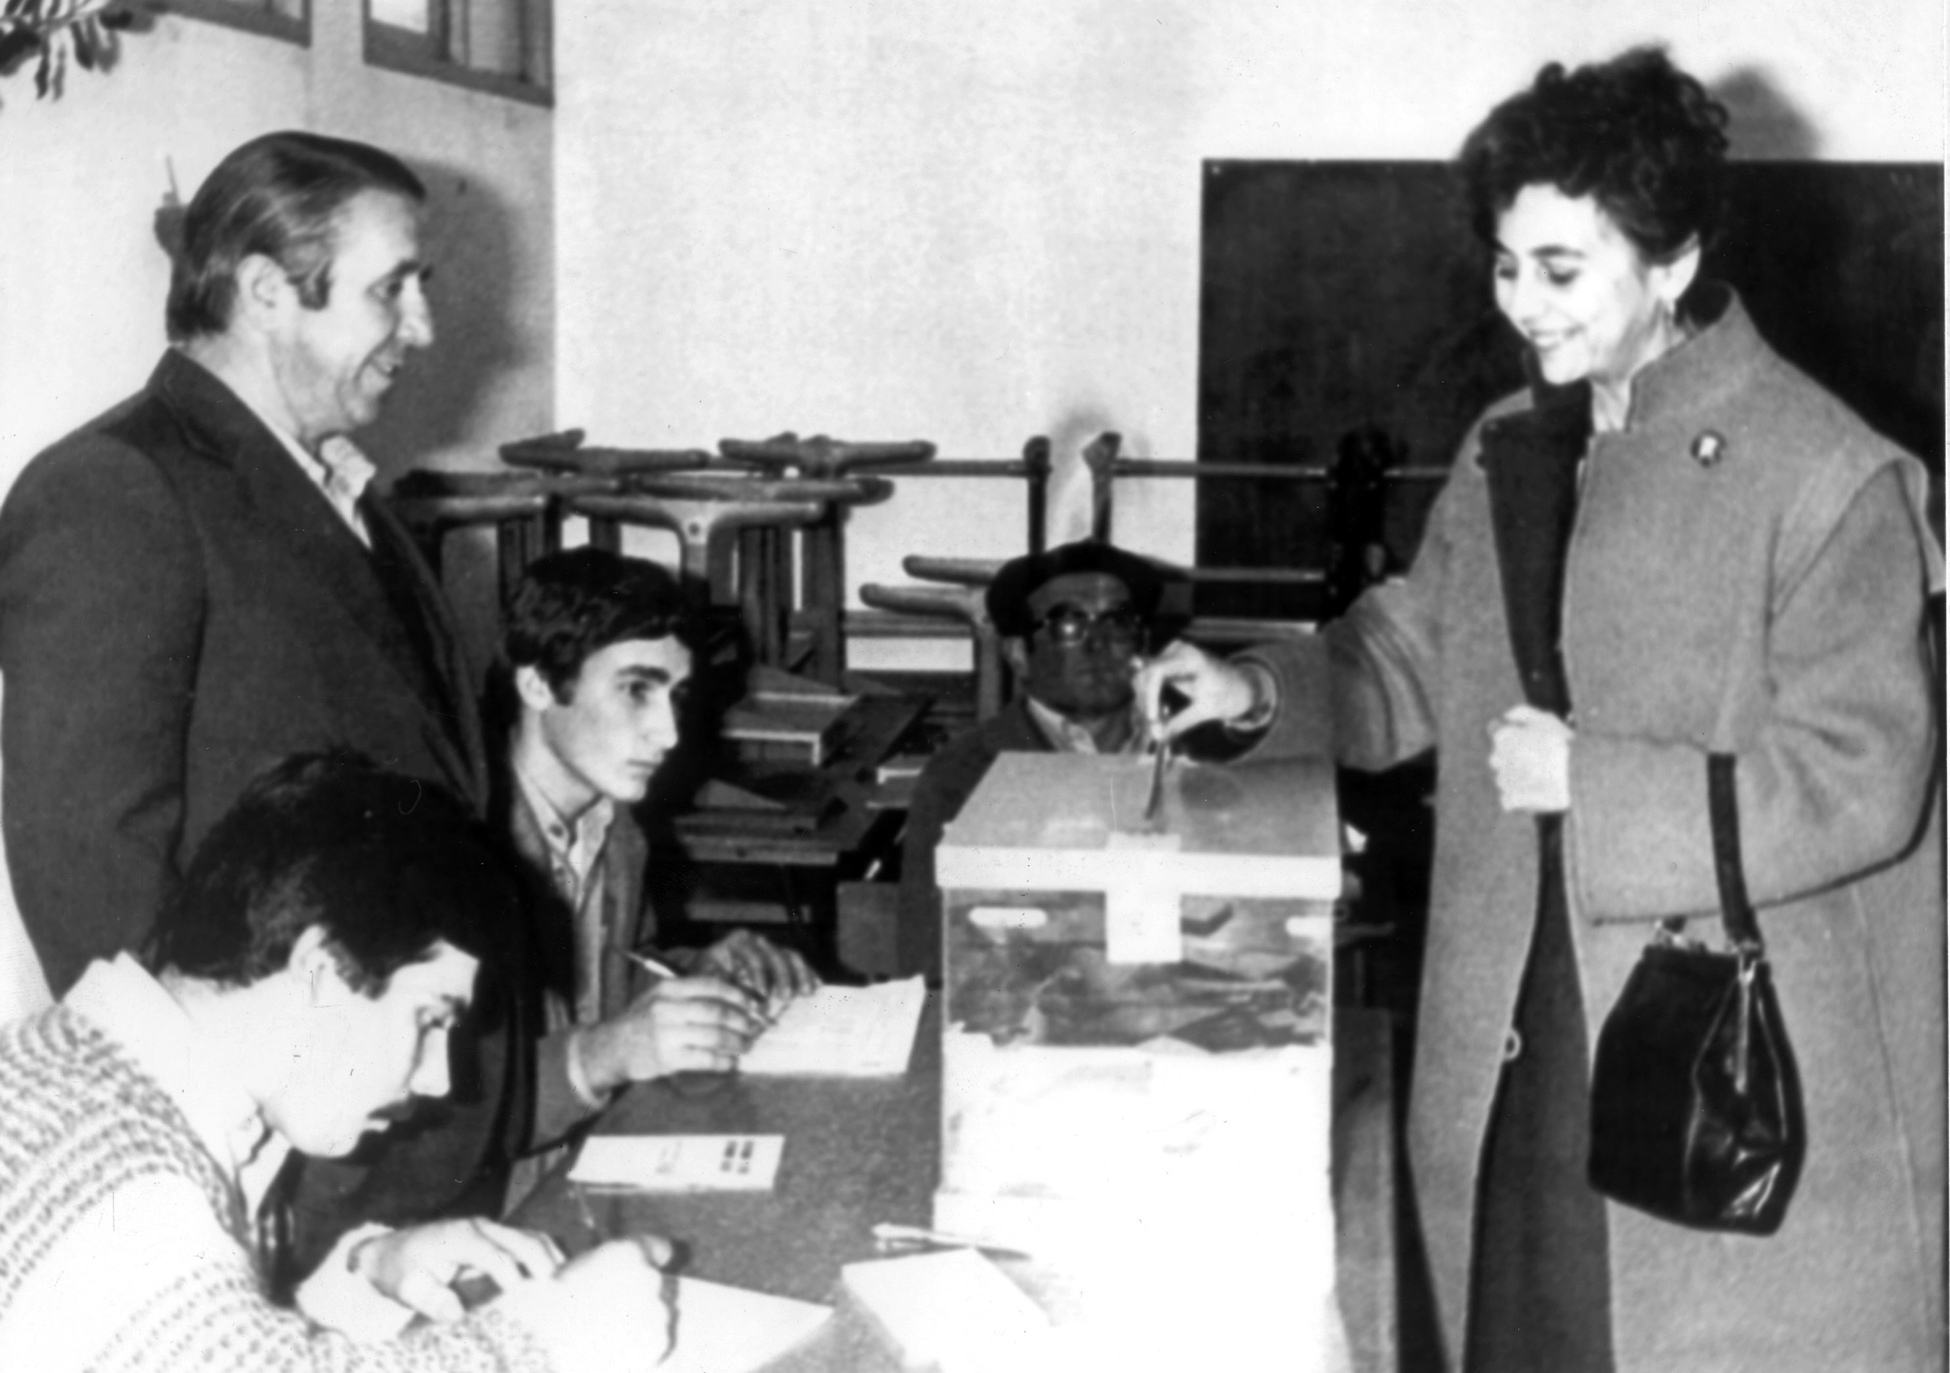 1977 - Referéndum estatuto gallego (voto de María Victoria, vicepresidenta del Congreso de los Diputados y parlamentaria por Coalición Democrática)